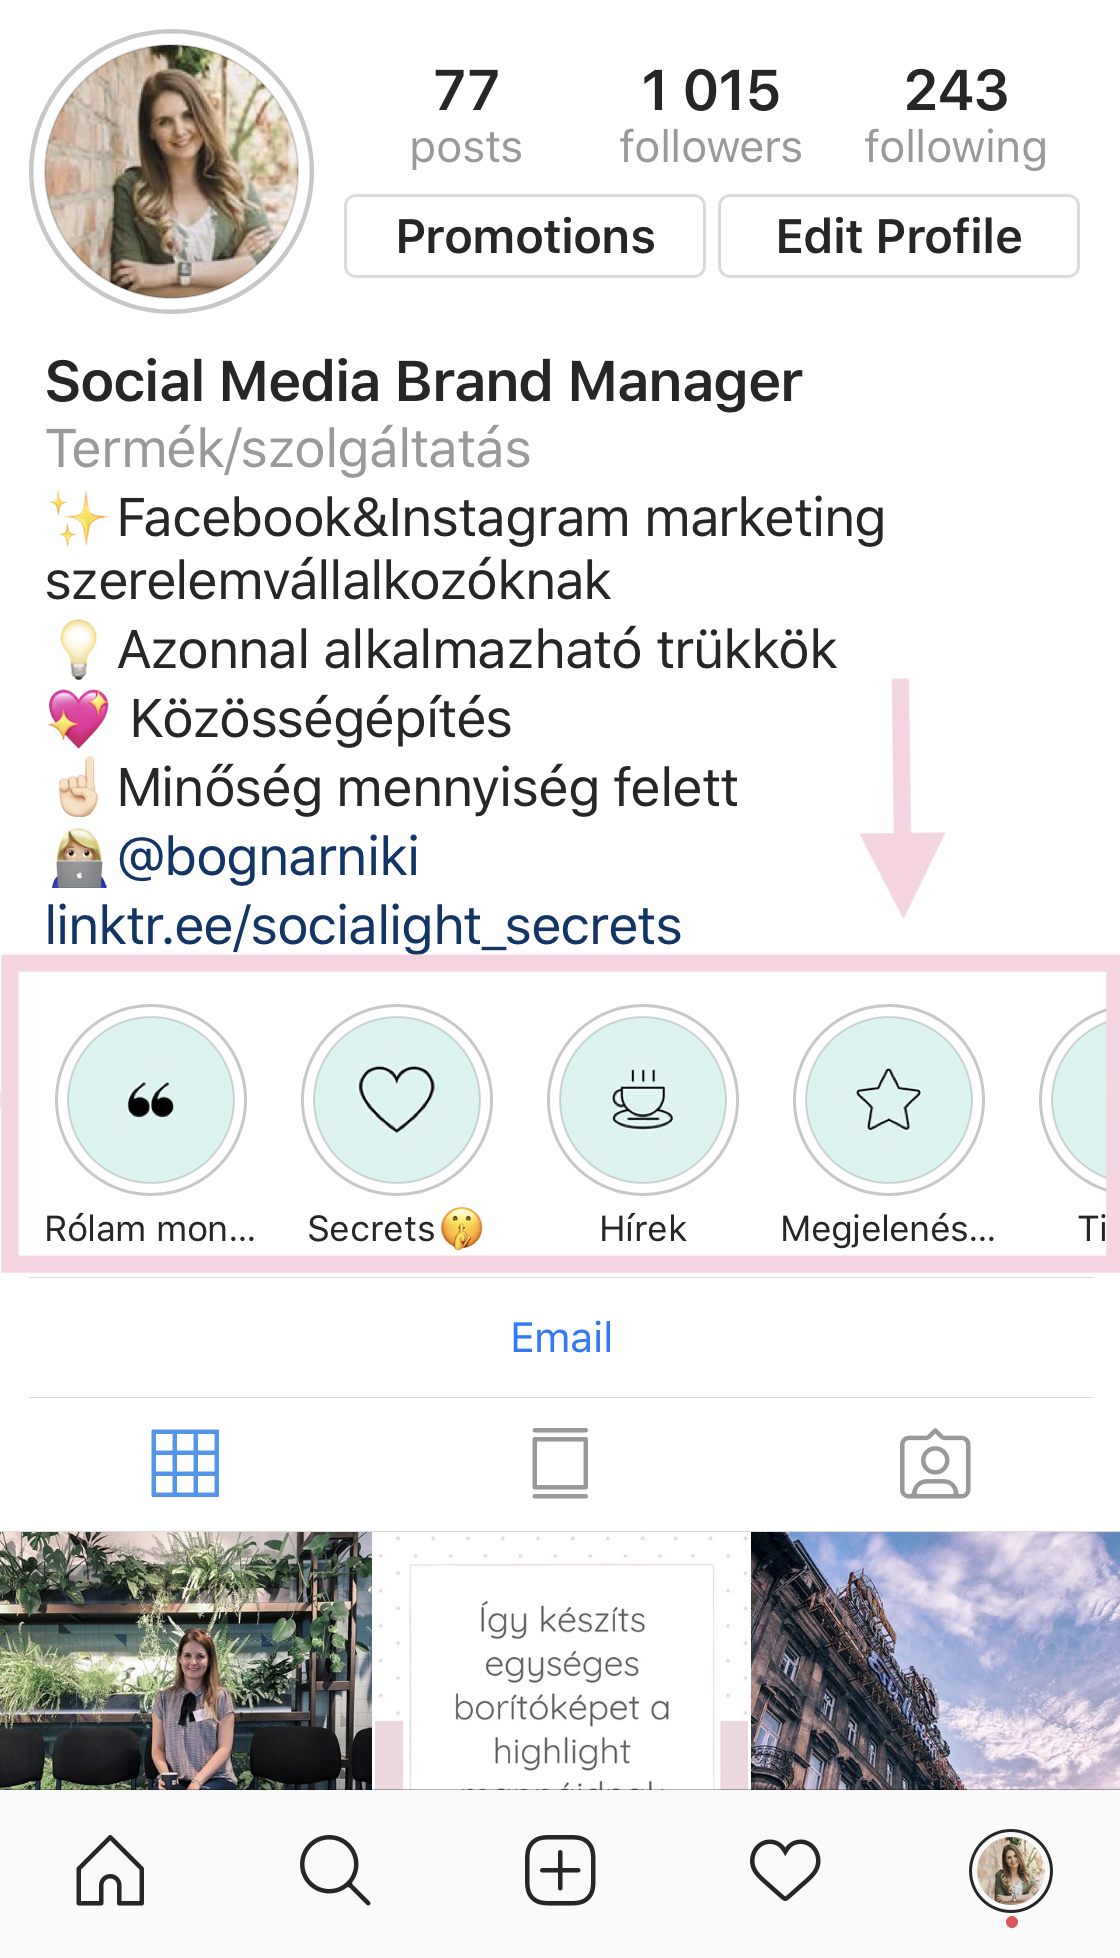 Így készíts egyedi highlight borítóképet Instagramra